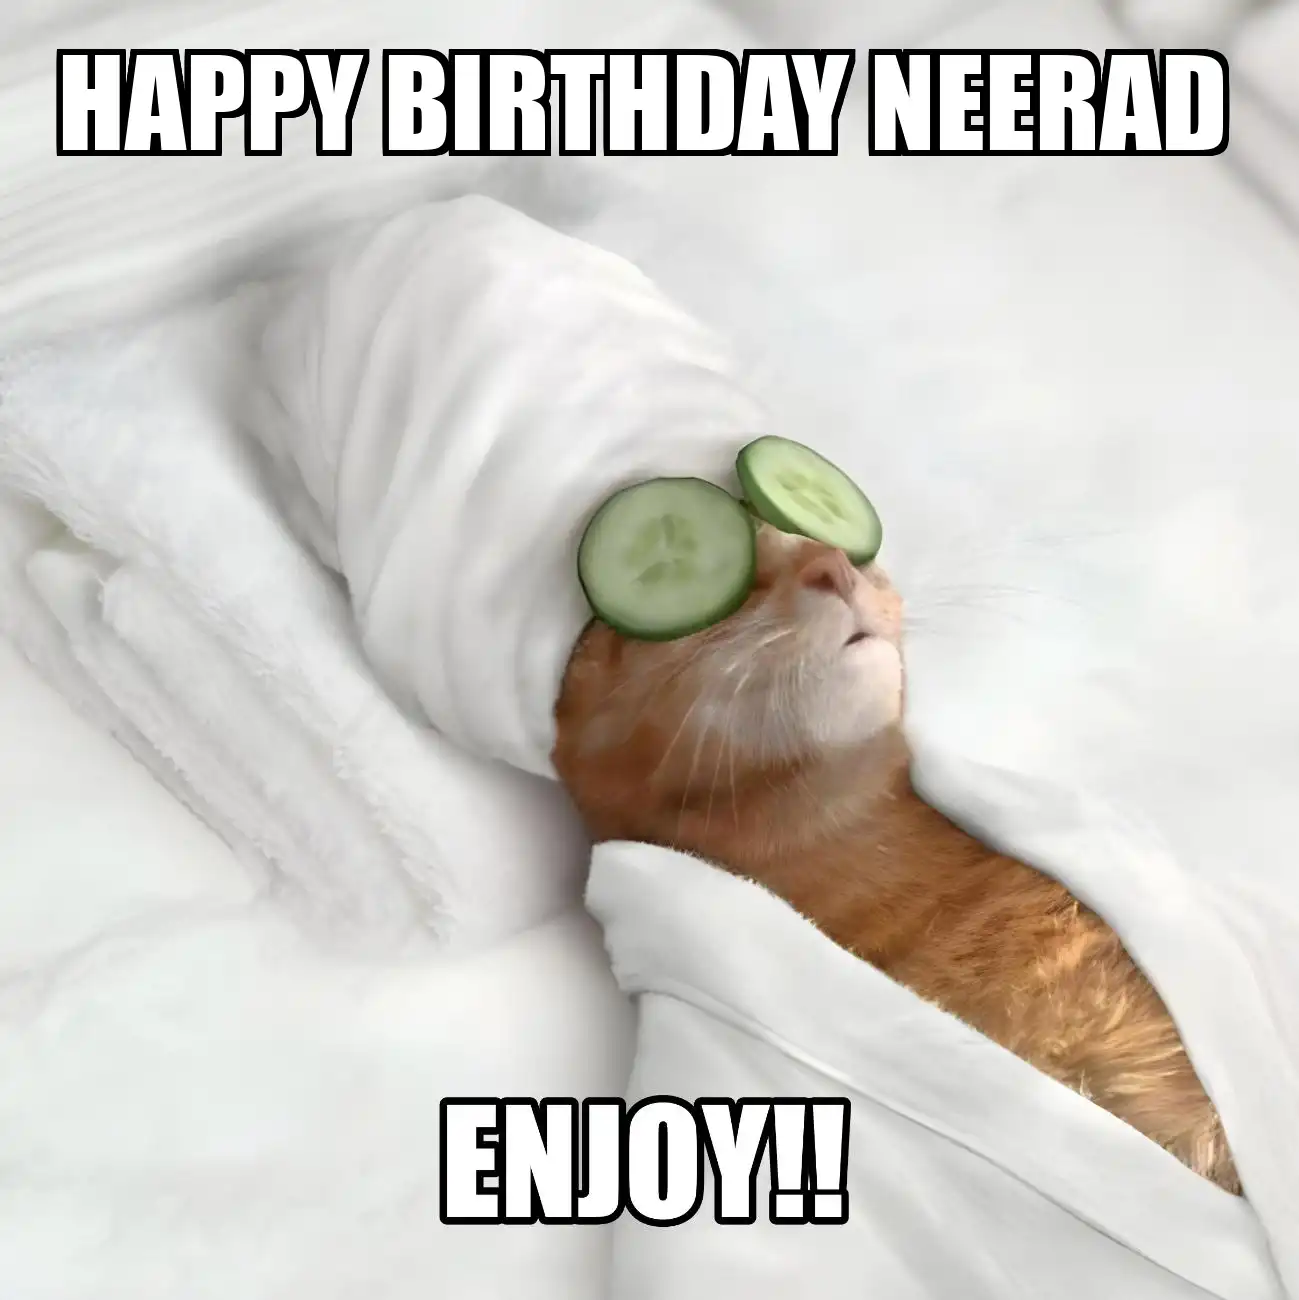 Happy Birthday Neerad Enjoy Cat Meme